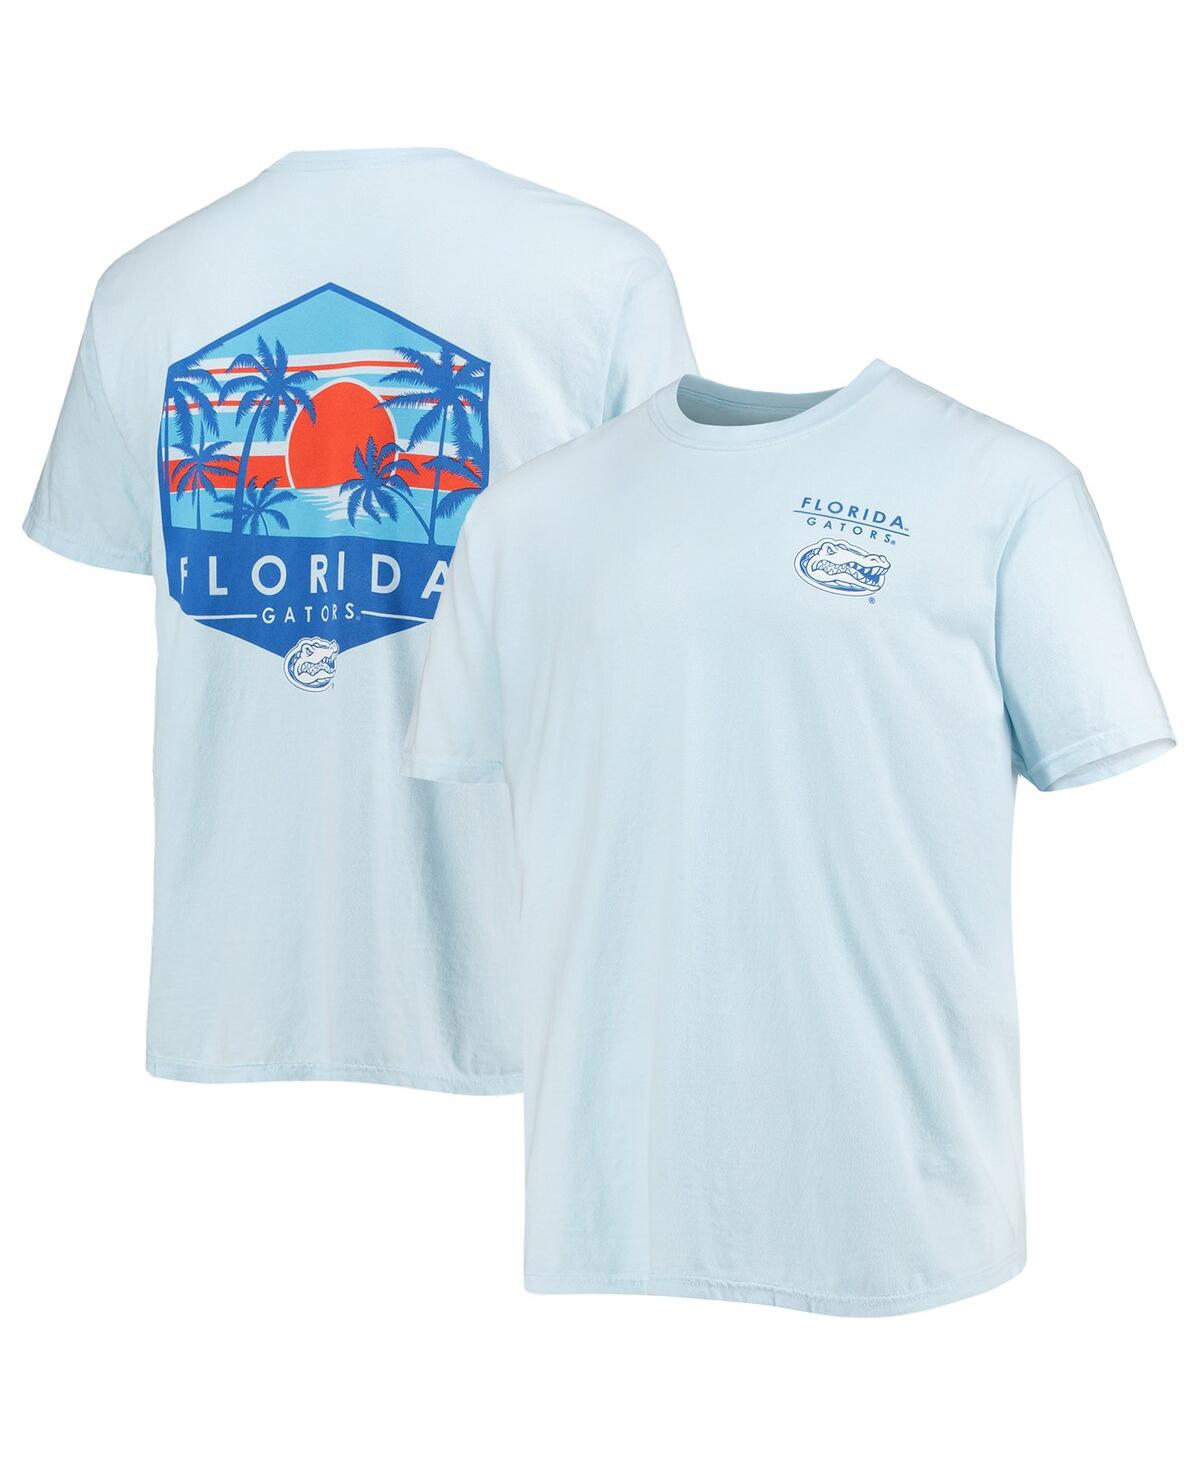 Shop Image One Men's Light Blue Florida Gators Landscape Shield Comfort Colors T-shirt